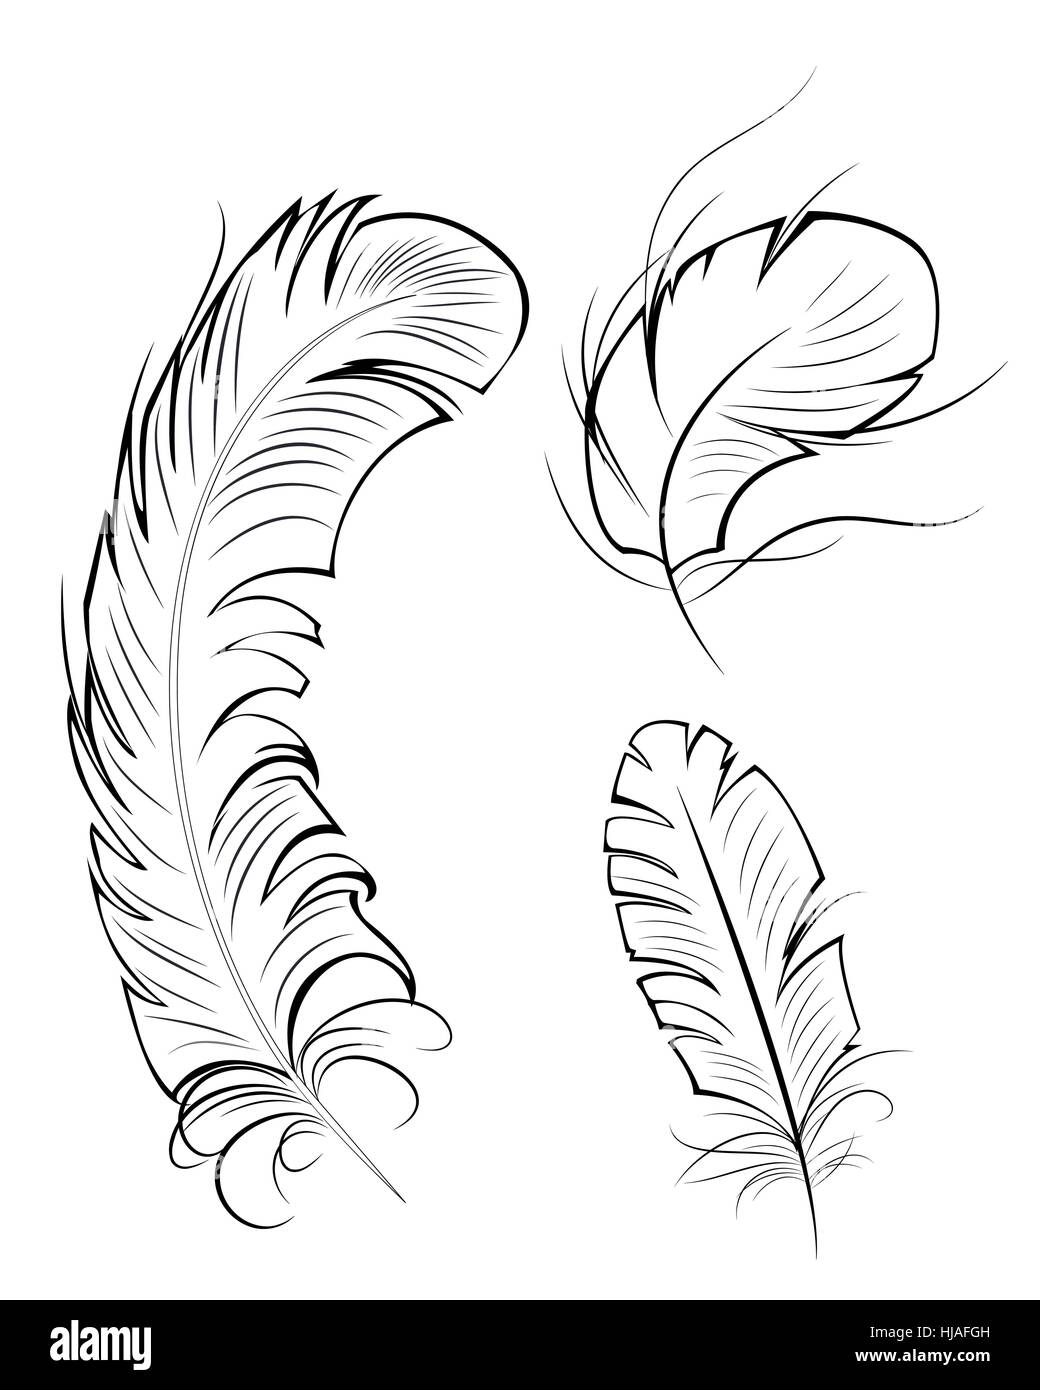 El contorno dibujado, artístico, original de tres plumas en un fondo blanco  Imagen Vector de stock - Alamy